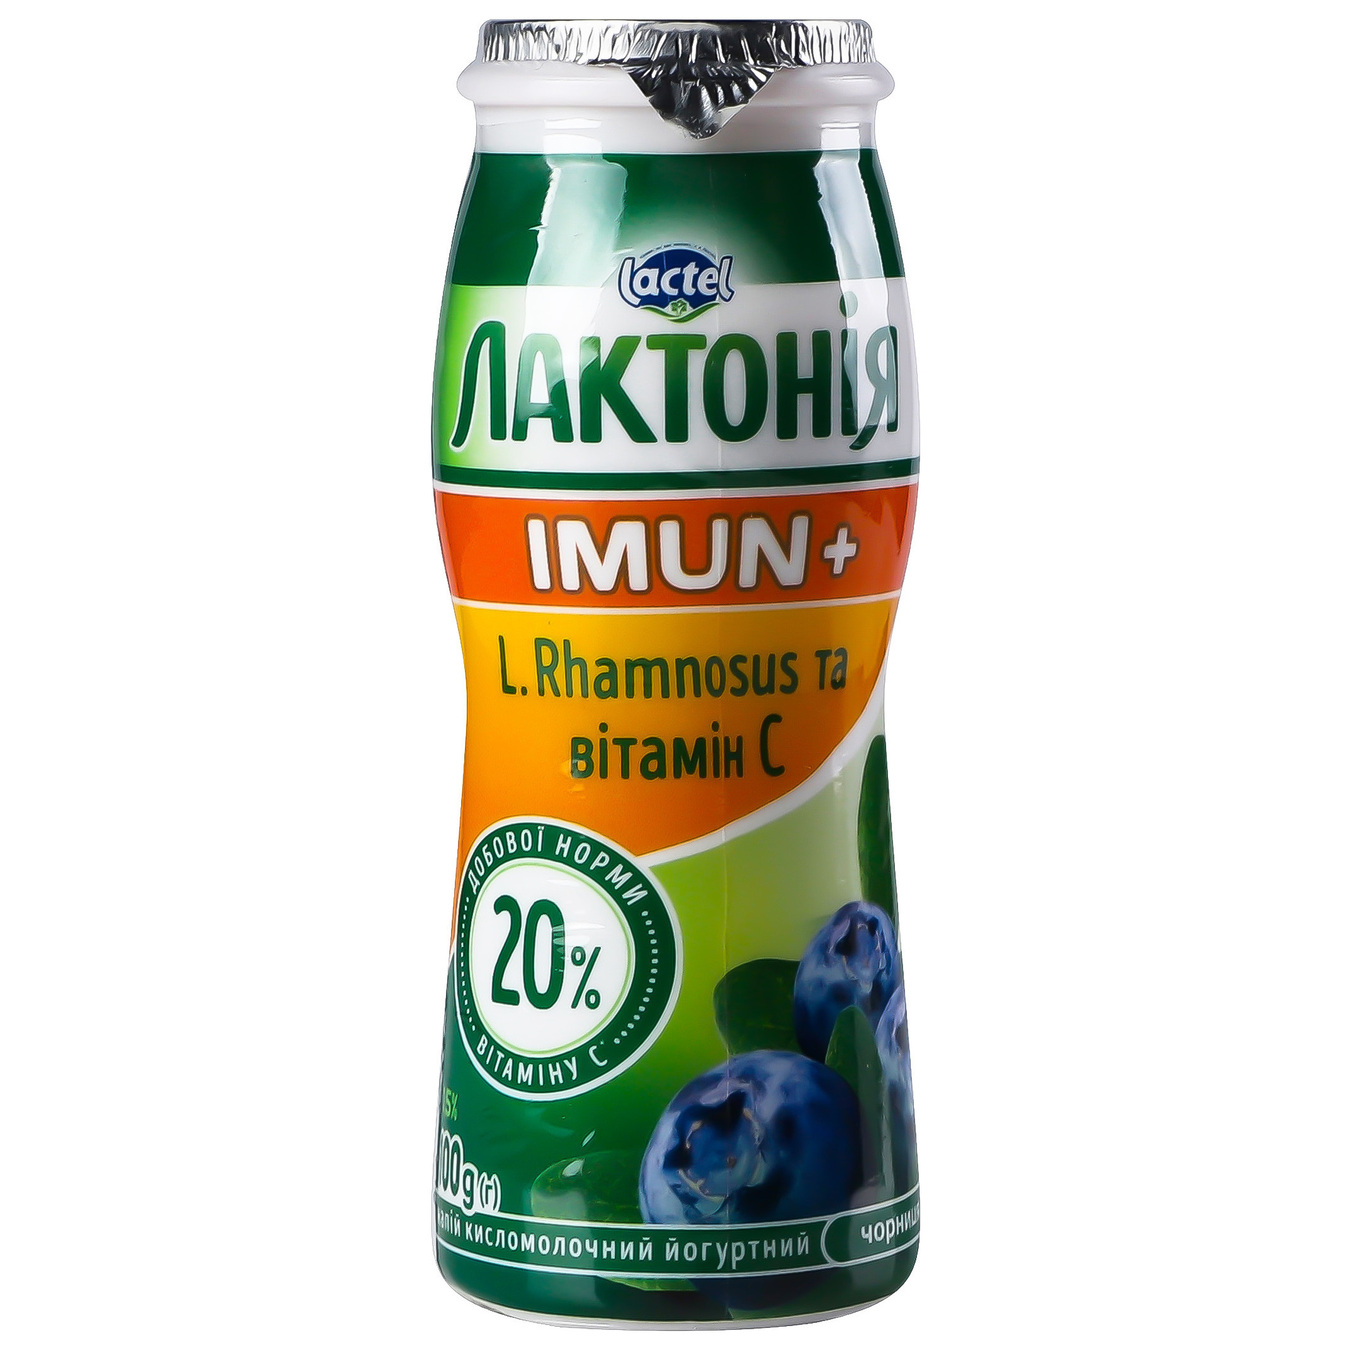 Продукт кисломолочный Лактония черника с пробиотиком L.Rhamnosus и витамином С Имун+ 1,5% 100г